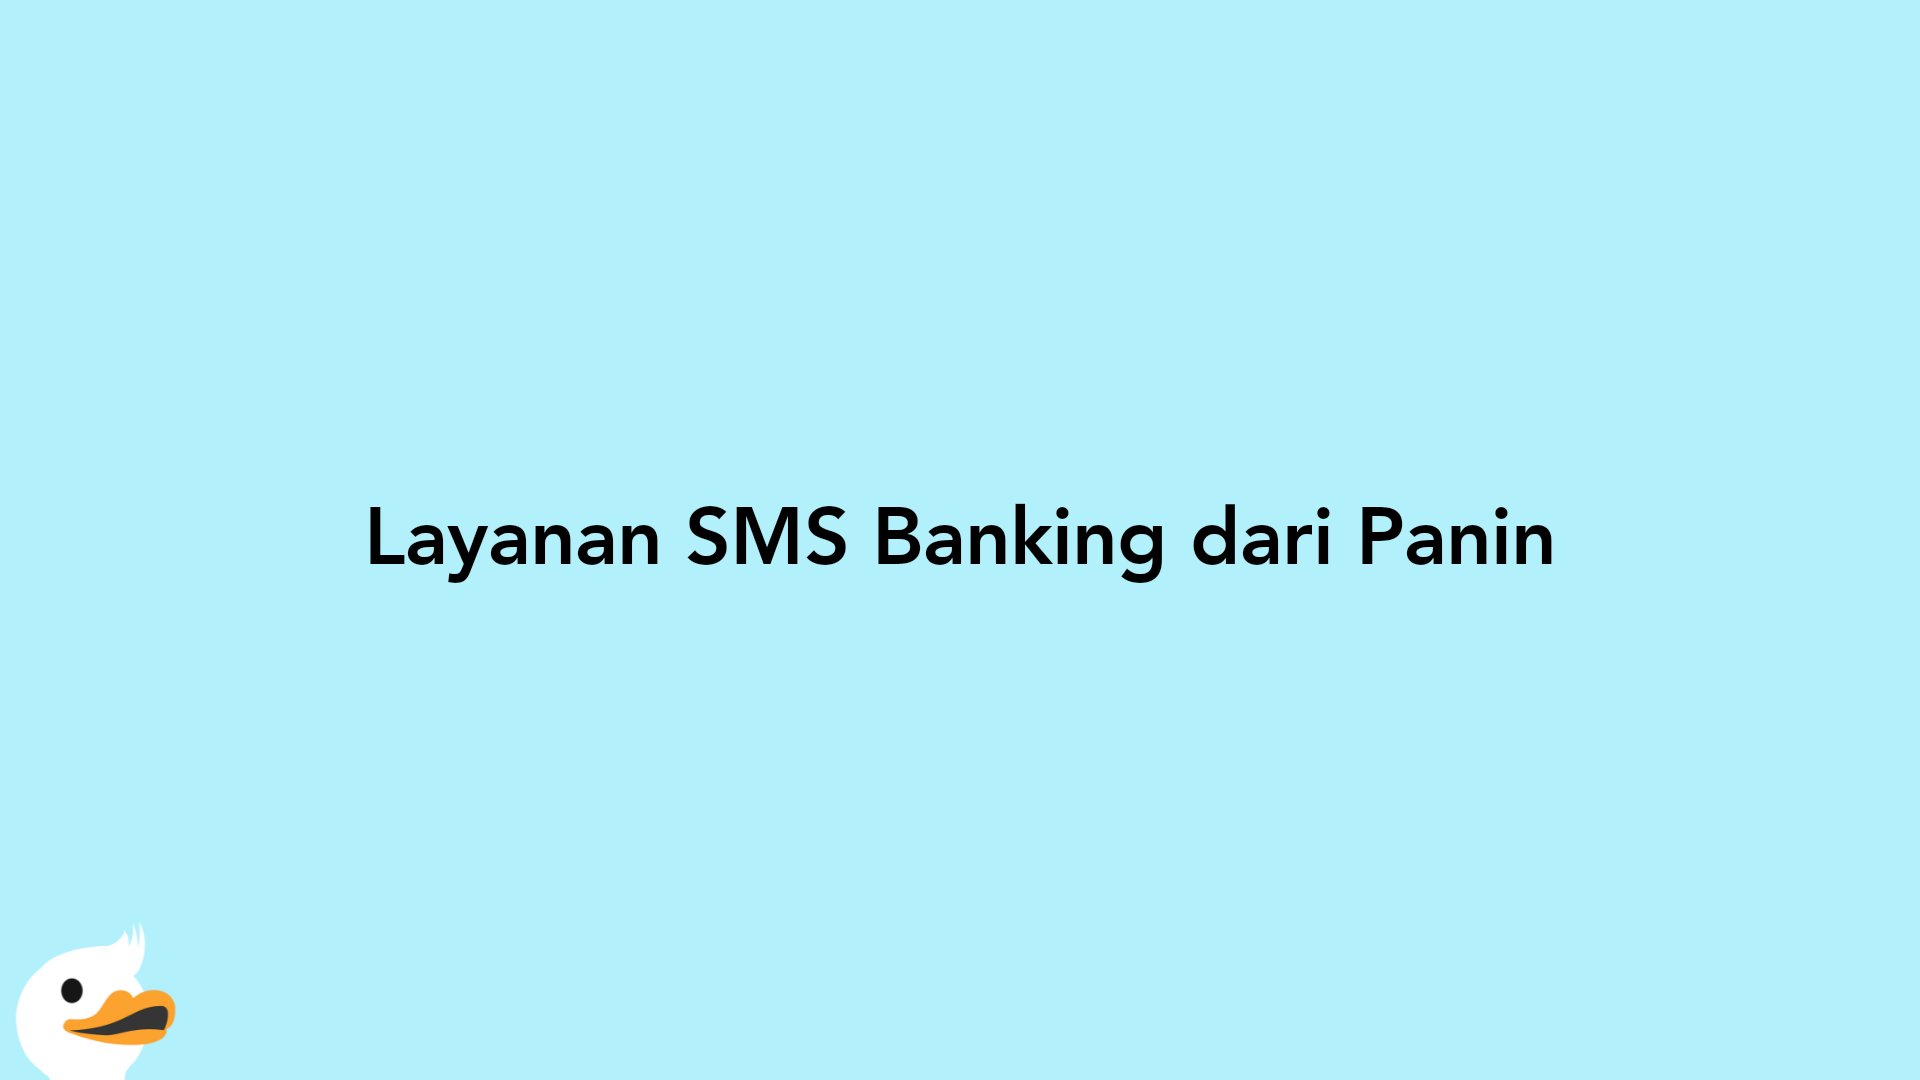 Layanan SMS Banking dari Panin